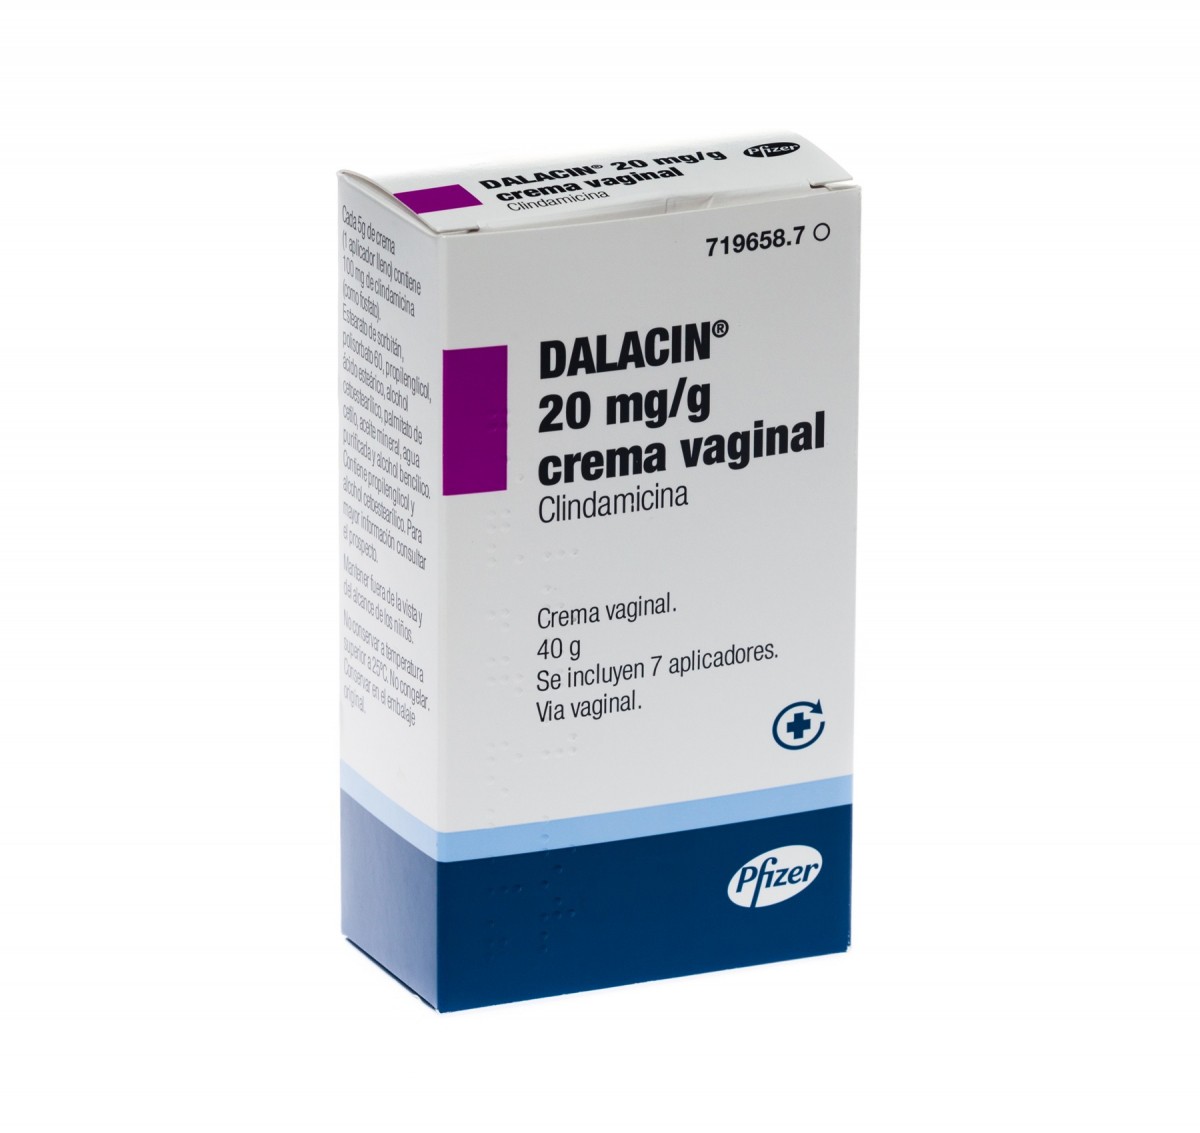 DALACIN 20 mg/g CREMA VAGINAL, 1 tubo de 40 g fotografía del envase.